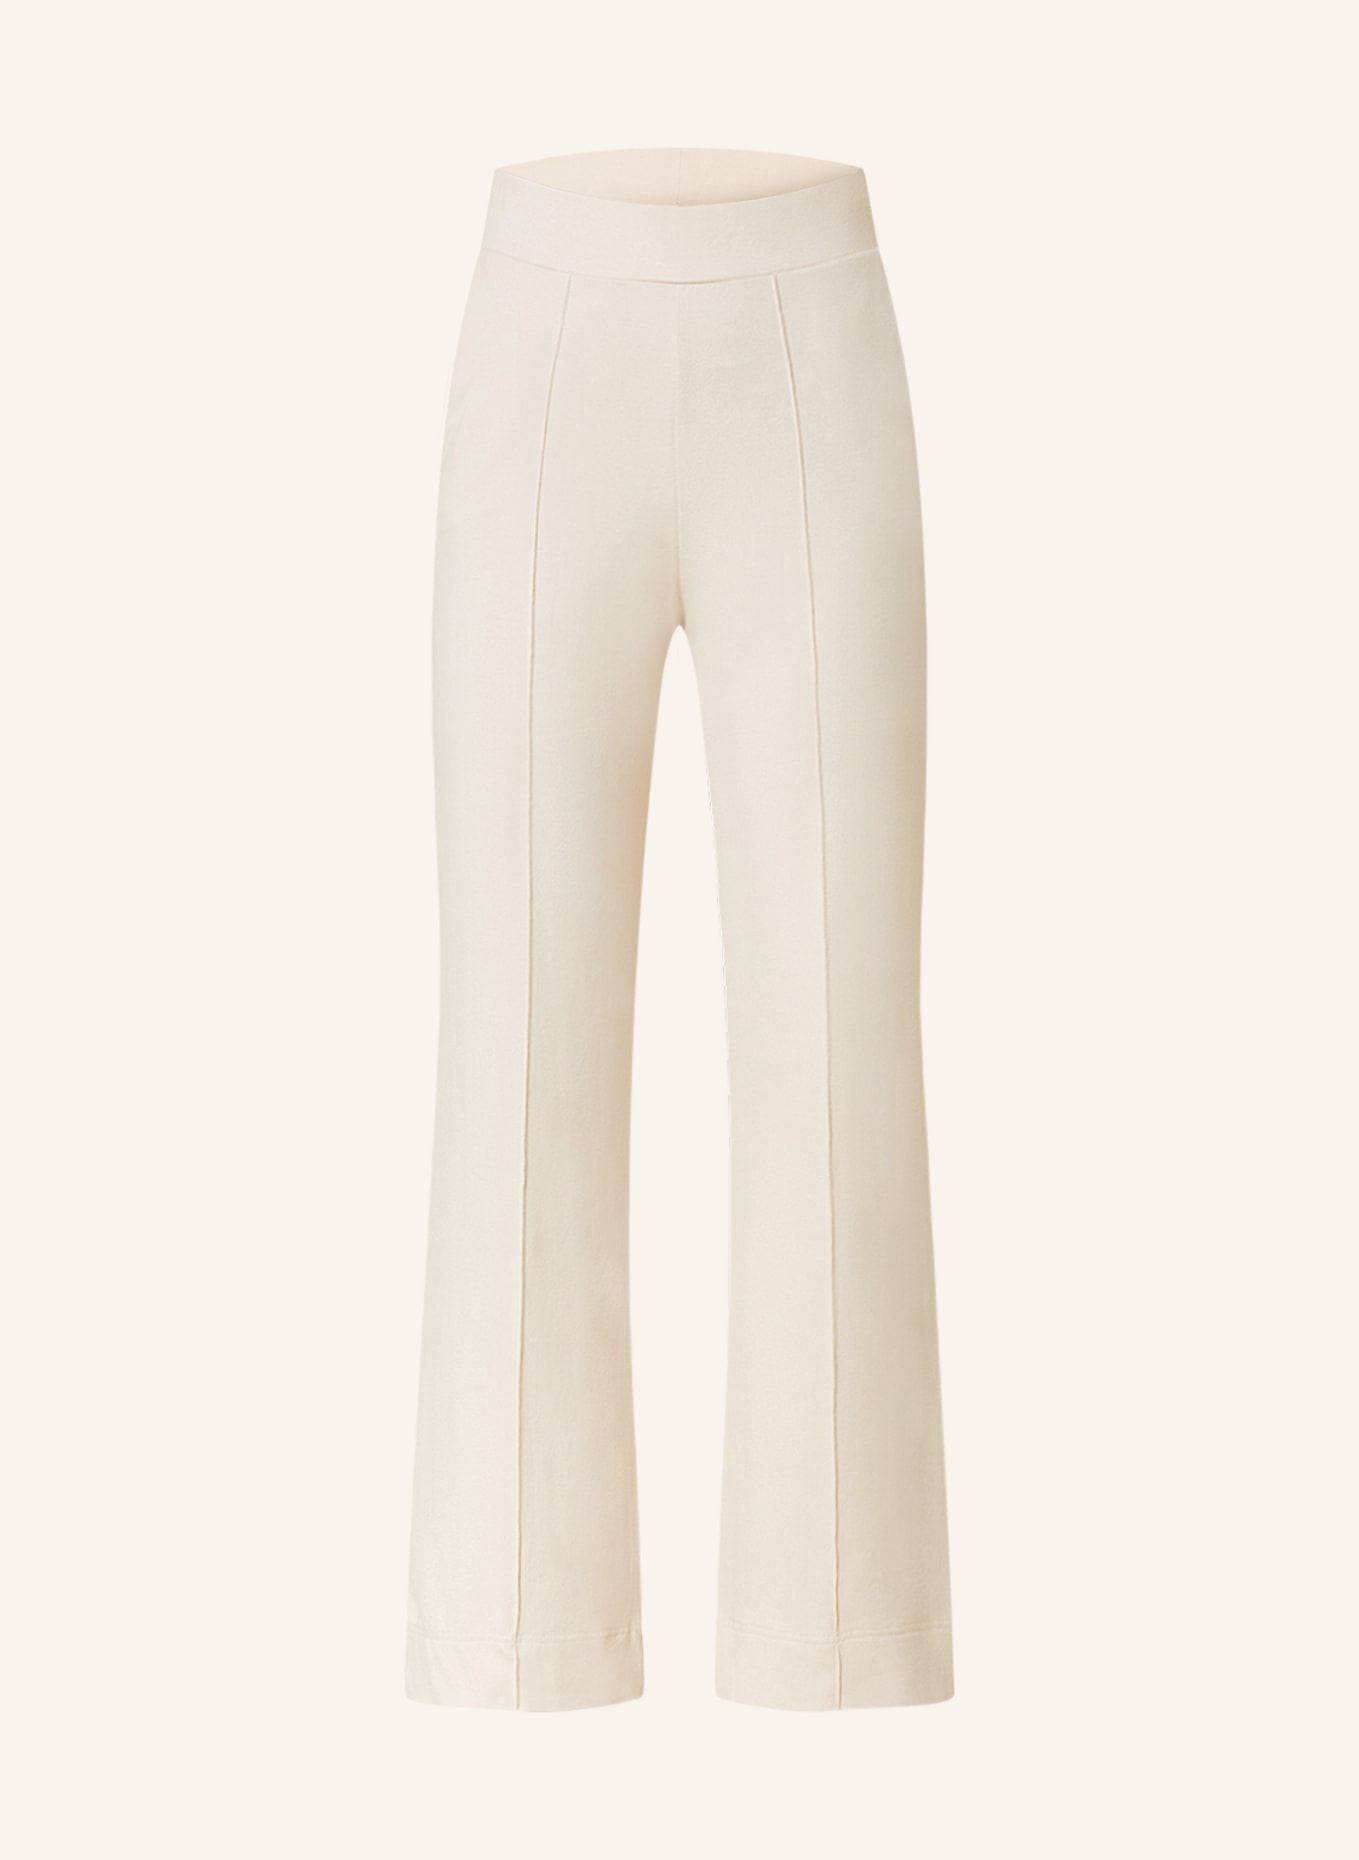 lilienfels Jersey pants, Color: CREAM (Image 1)